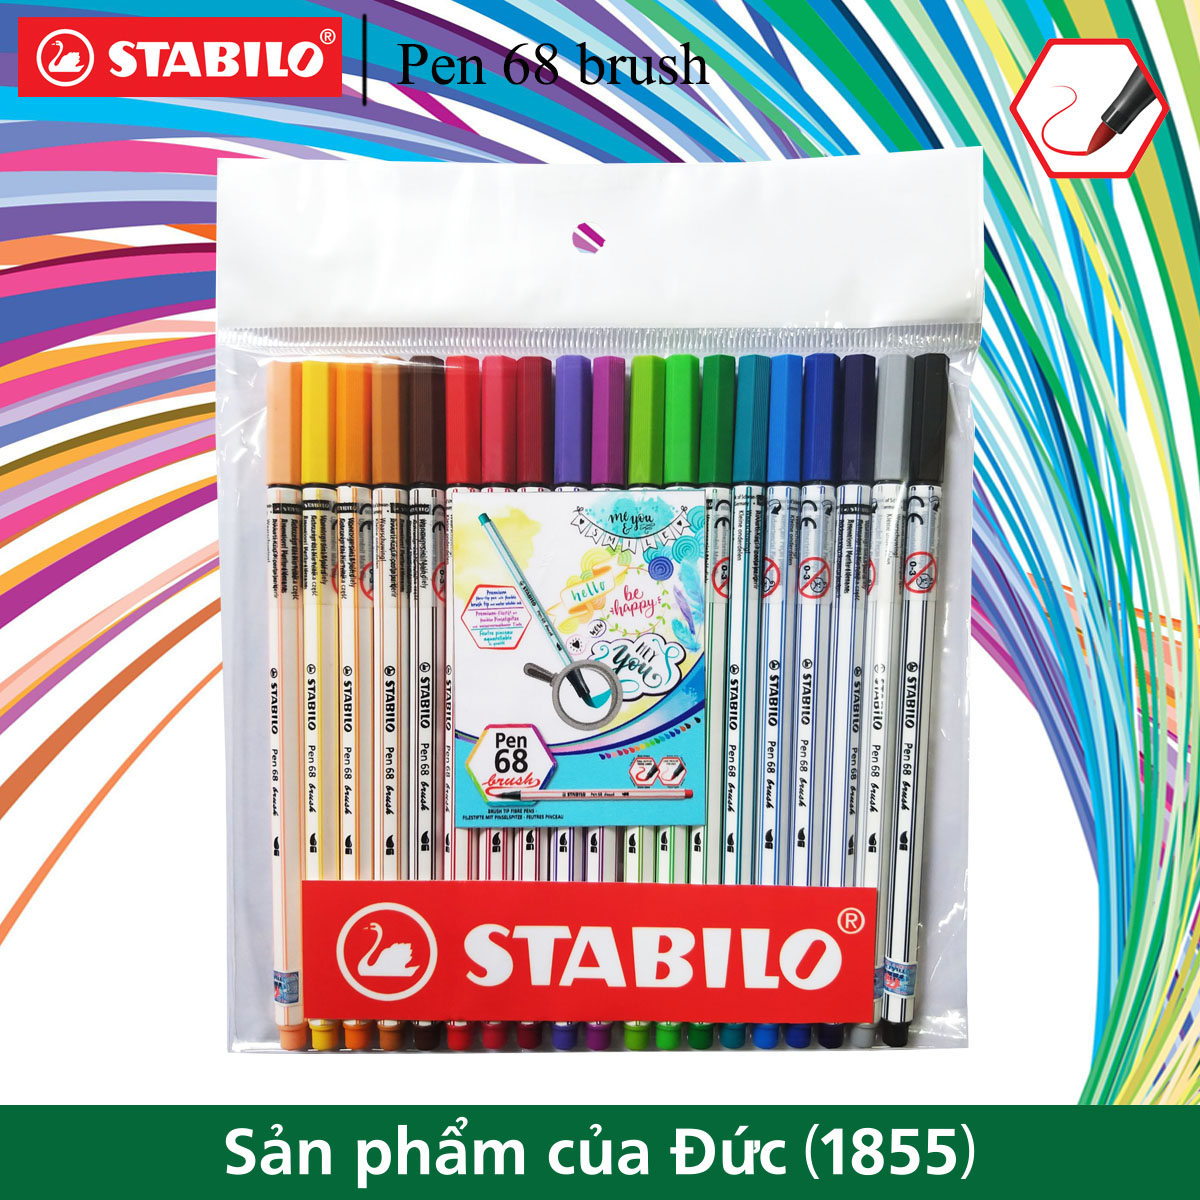 Bộ bút lông màu STABILO Pen 68 brush (19 màu)